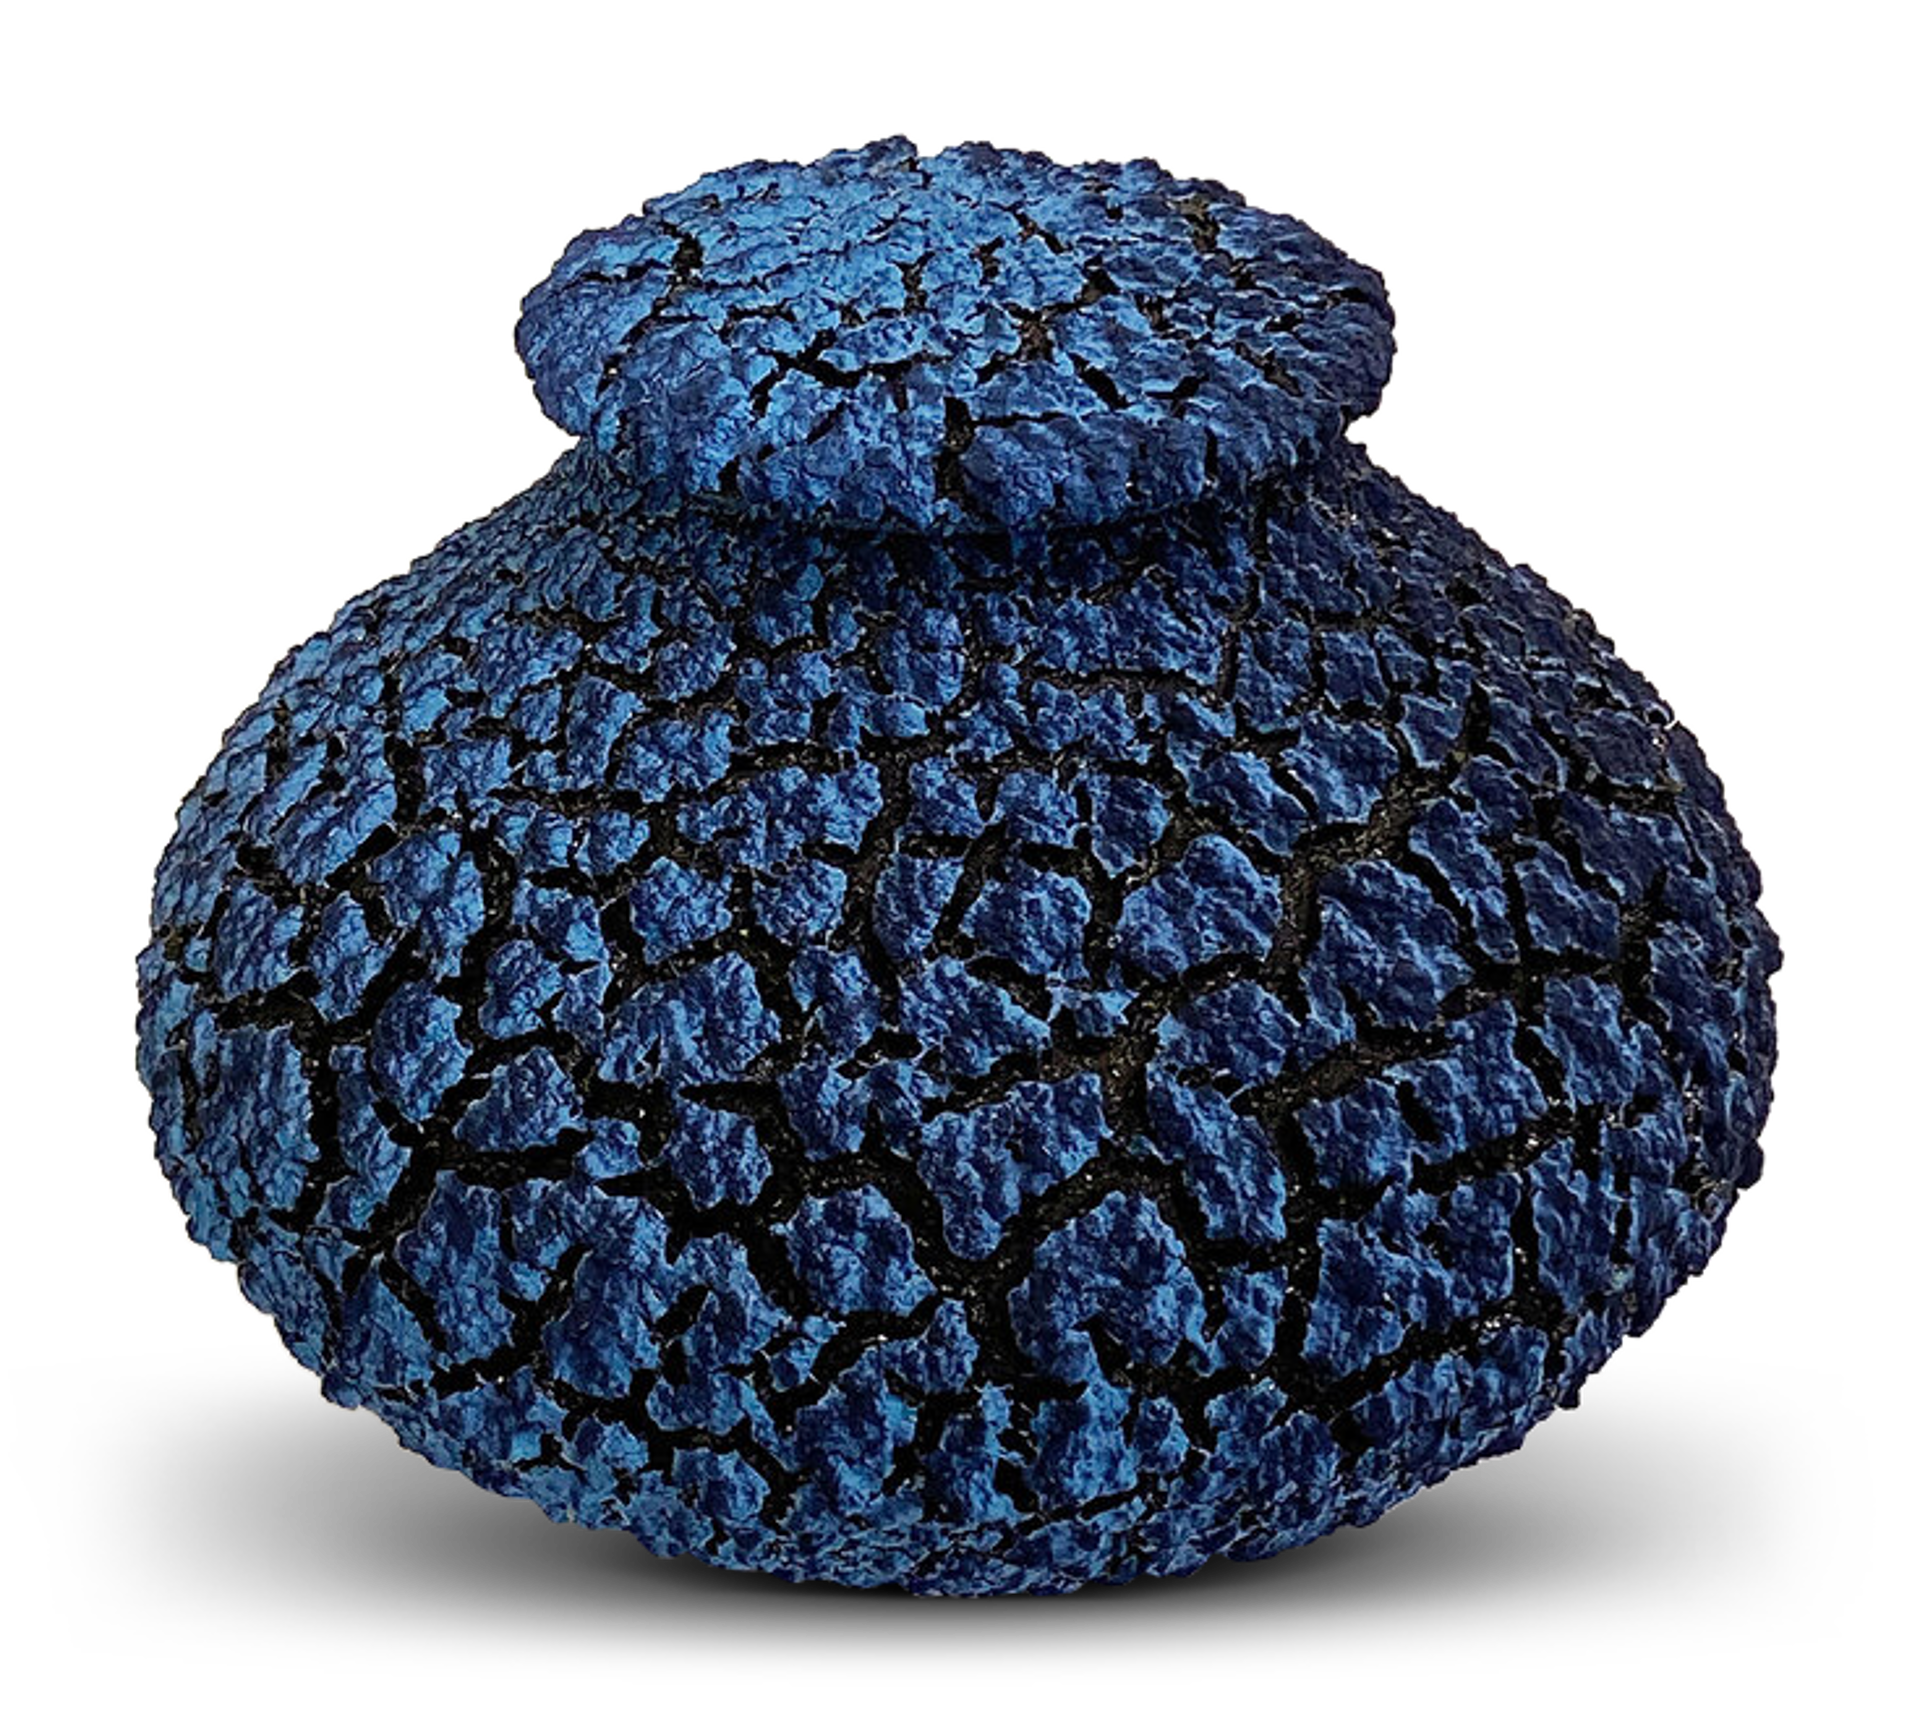 Small Lichen Jar by Randy O'Brien